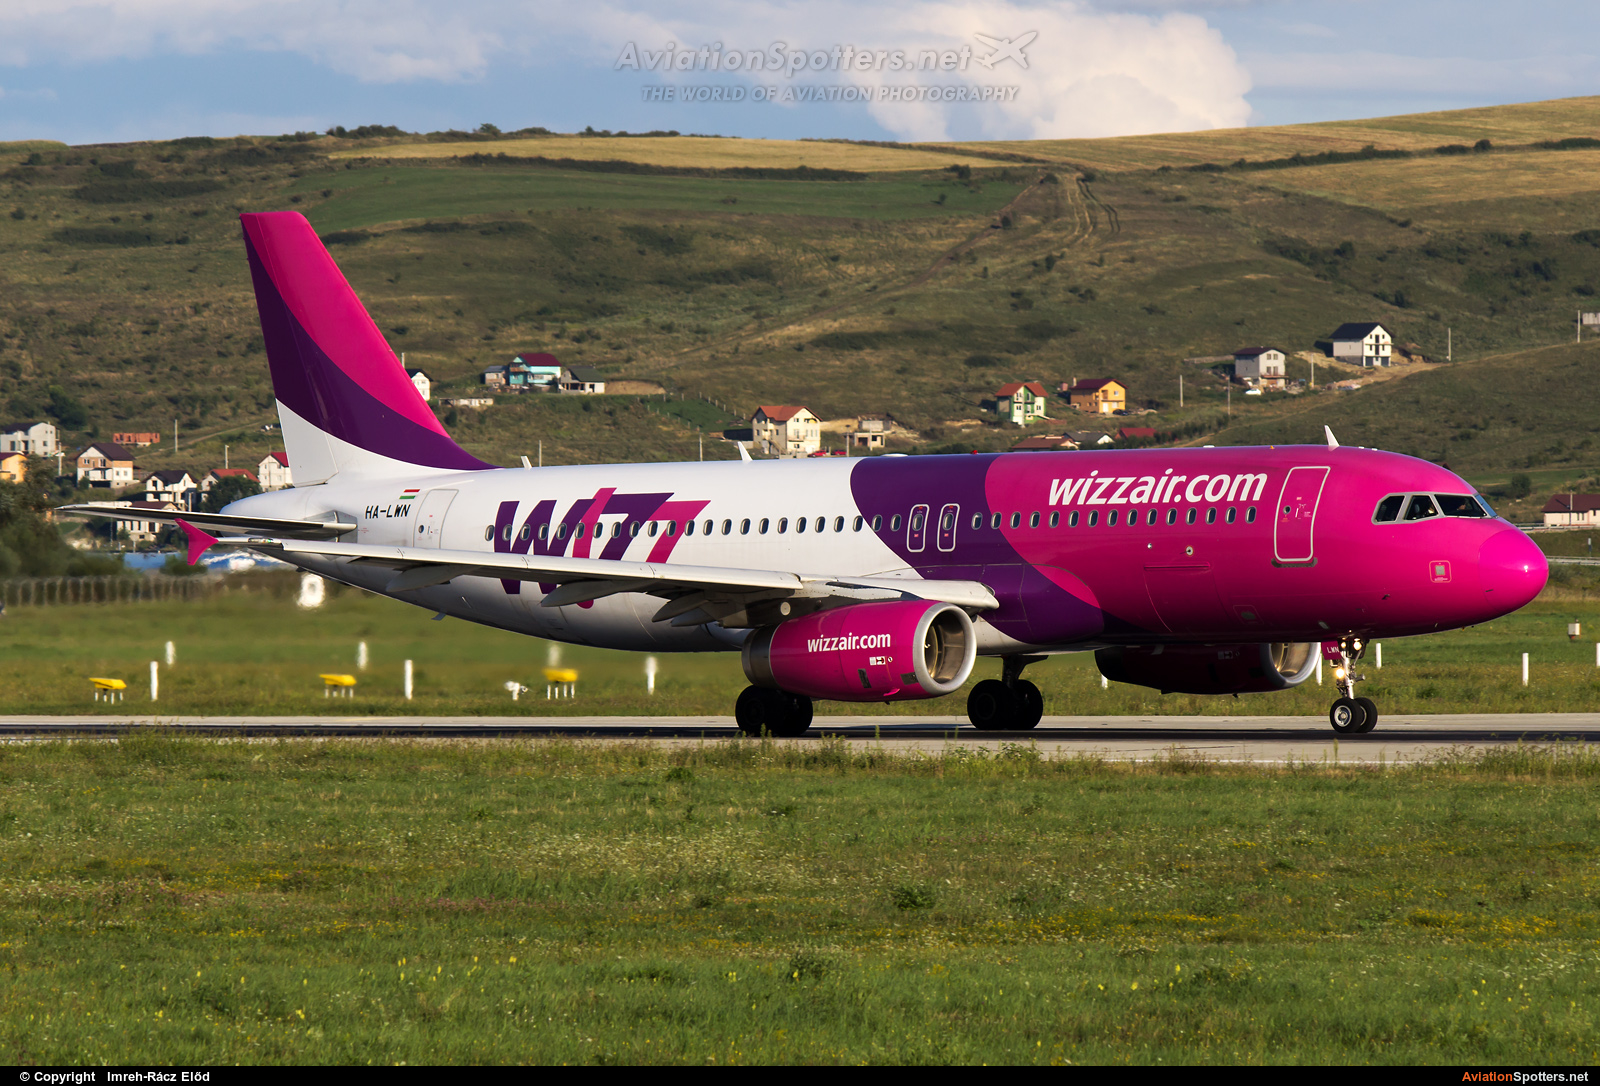 Wizz Air  -  A320  (HA-LWN) By Imreh-Rácz Előd (stratoking)